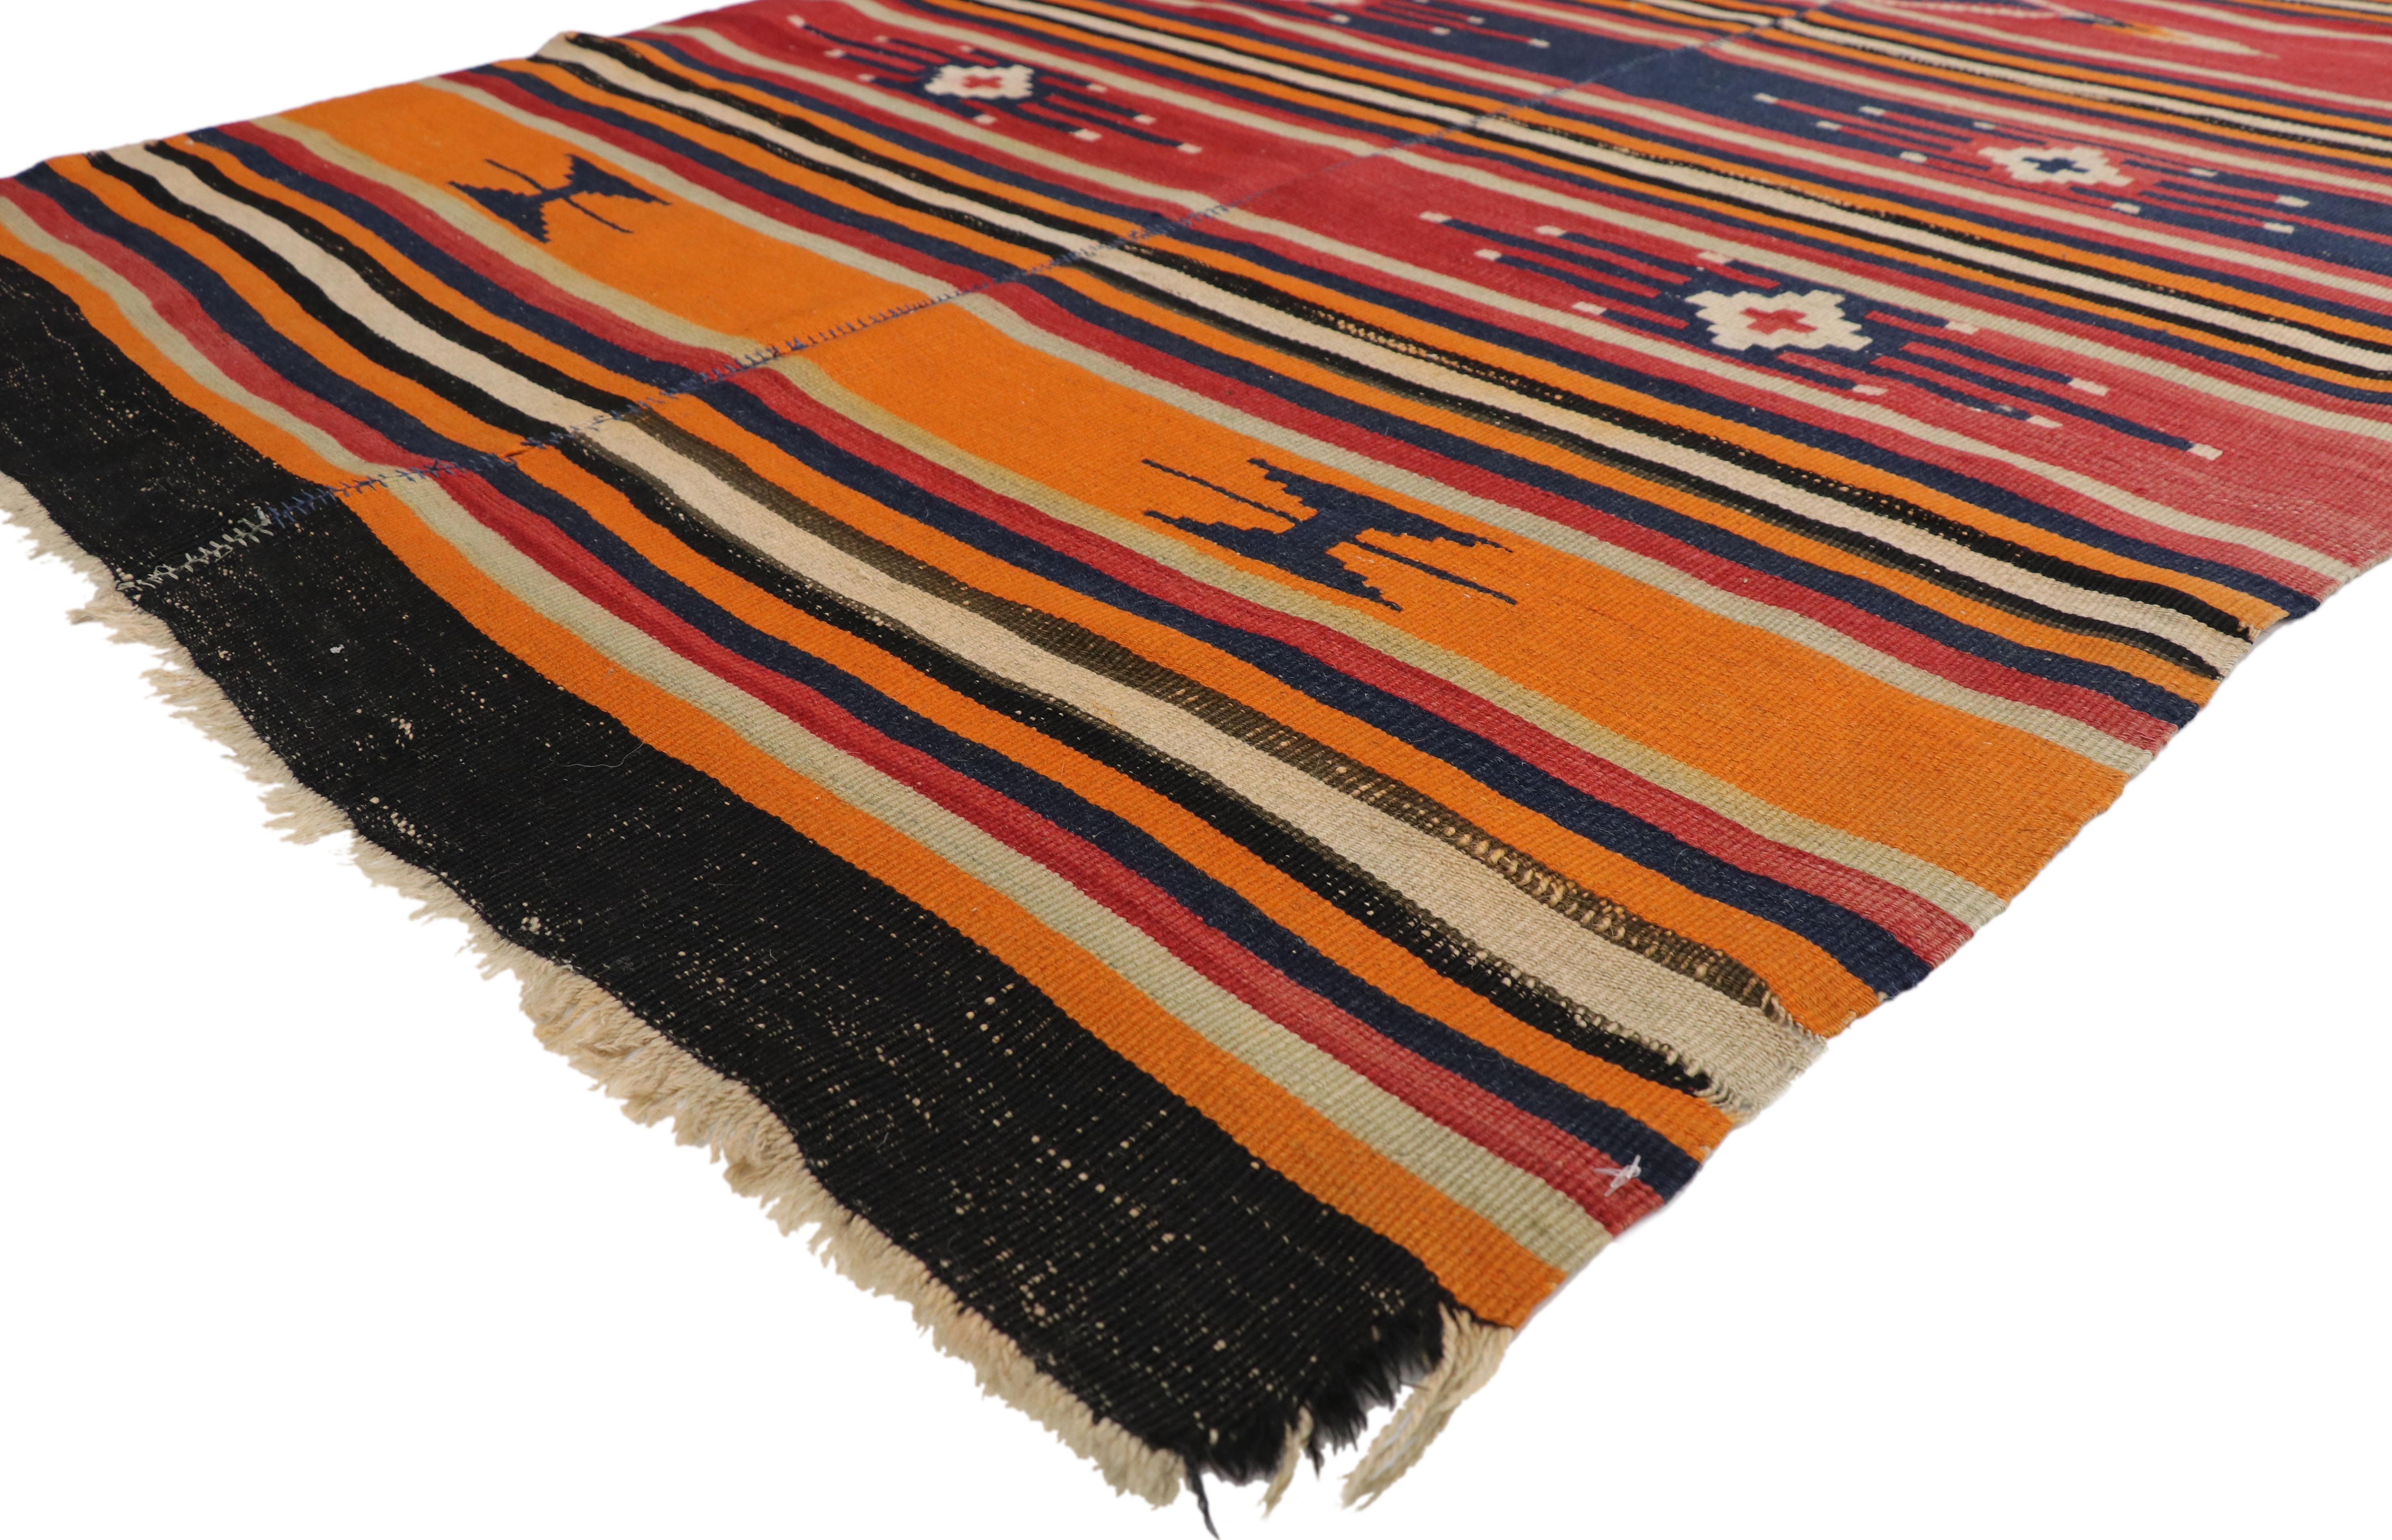 73172, türkischer Kelim-Teppich im Tribal-Stil. Sie wurde in den 1940er Jahren von türkischen Kunsthandwerkern hergestellt und weist breite und schmale Streifen in kräftigen Farben mit sekundären Schutzsymbolen auf. In den Farben Orange, Rot,